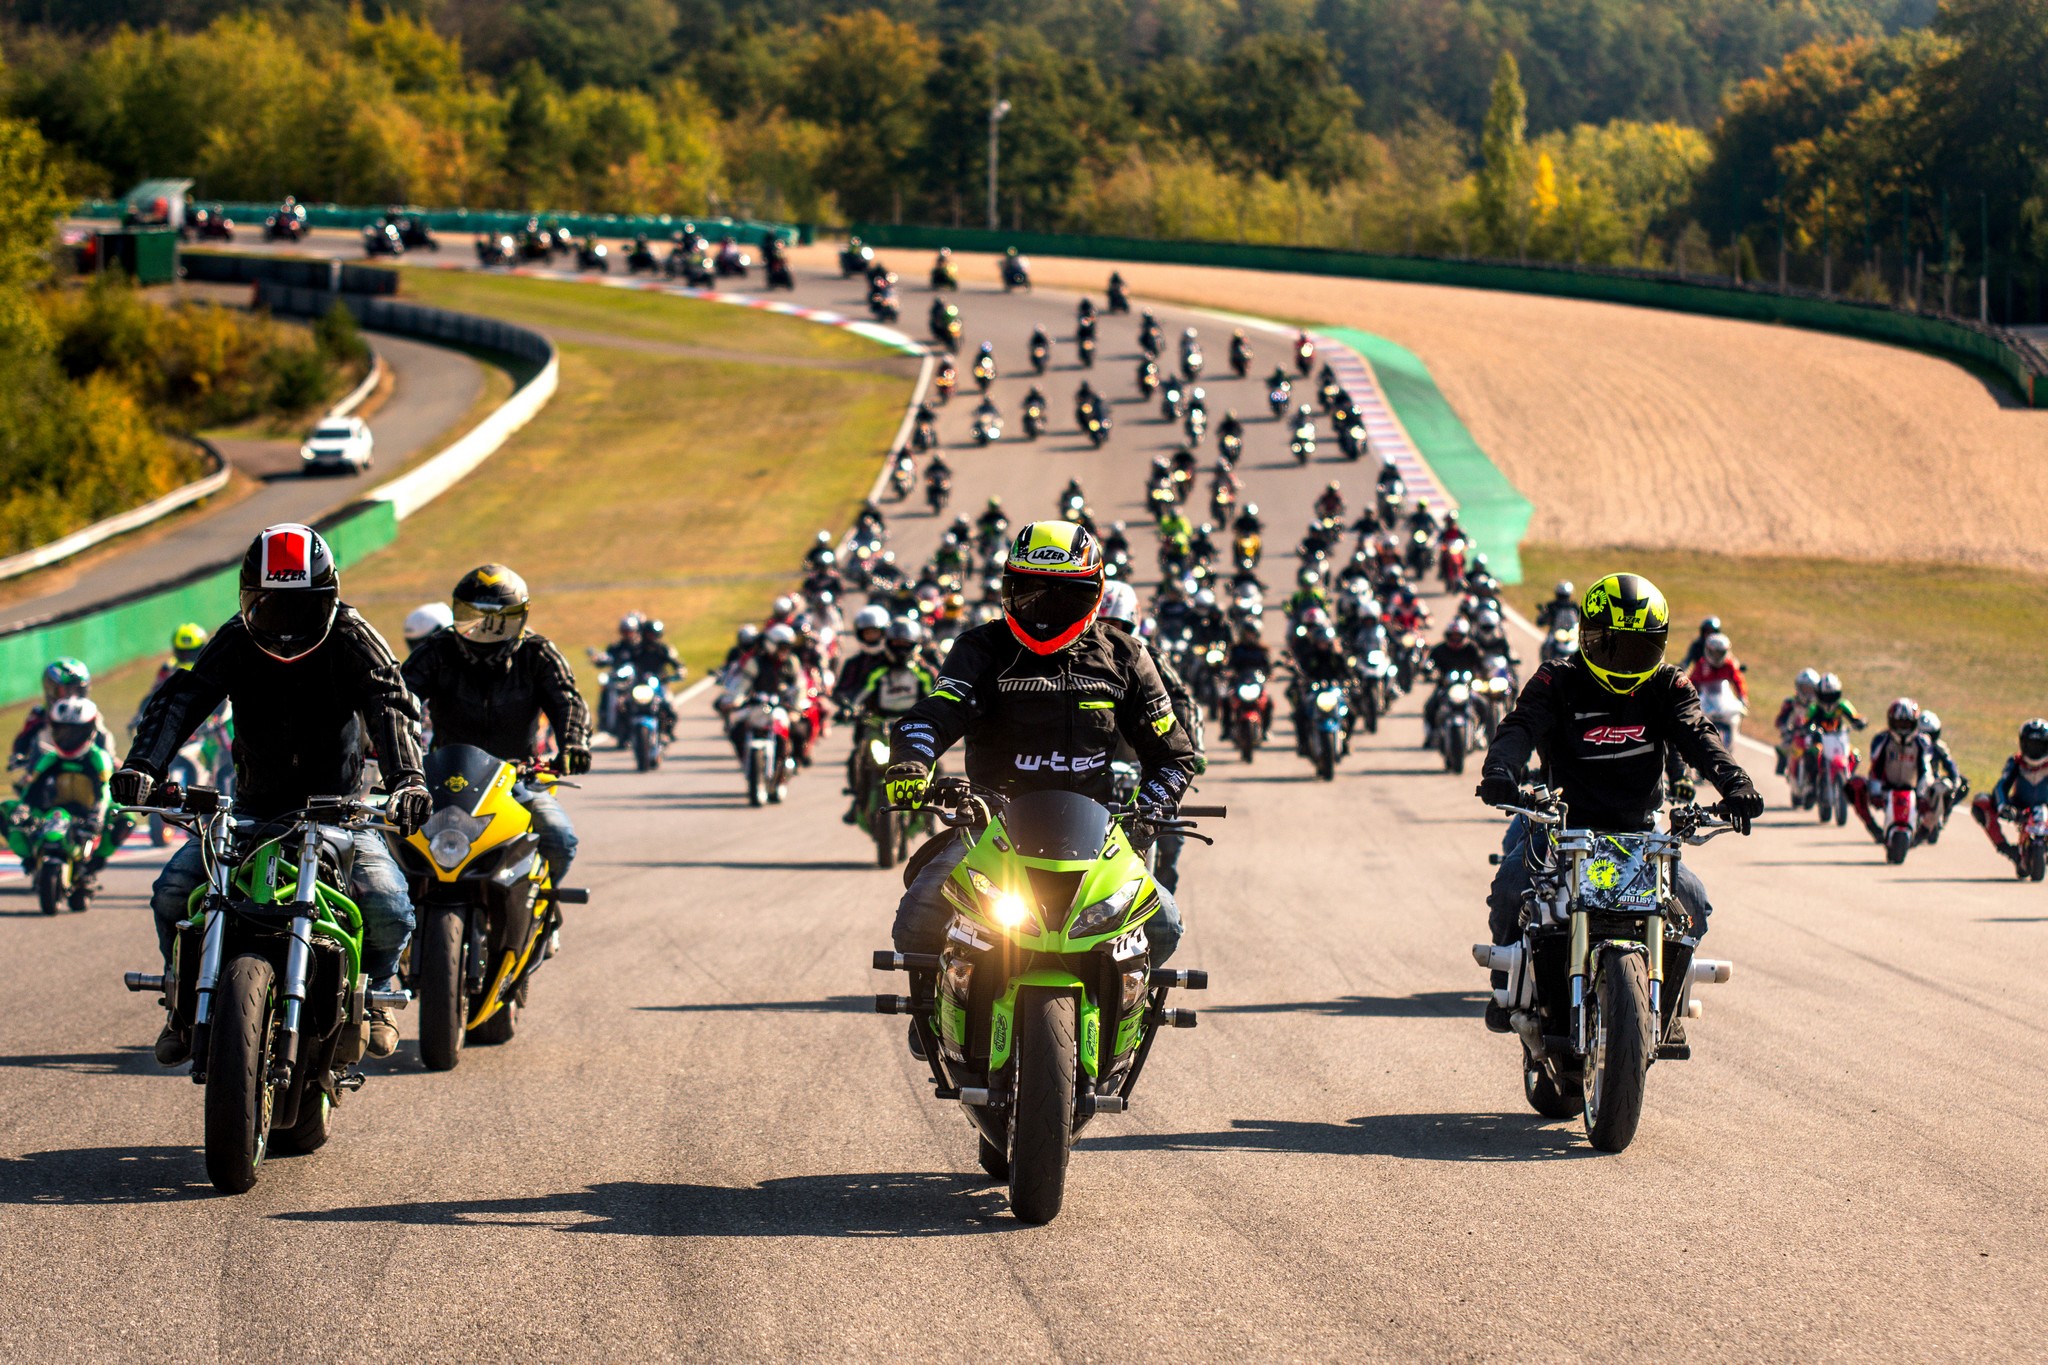 Motoshow rekord v Brně na závěr motocyklové sezóny